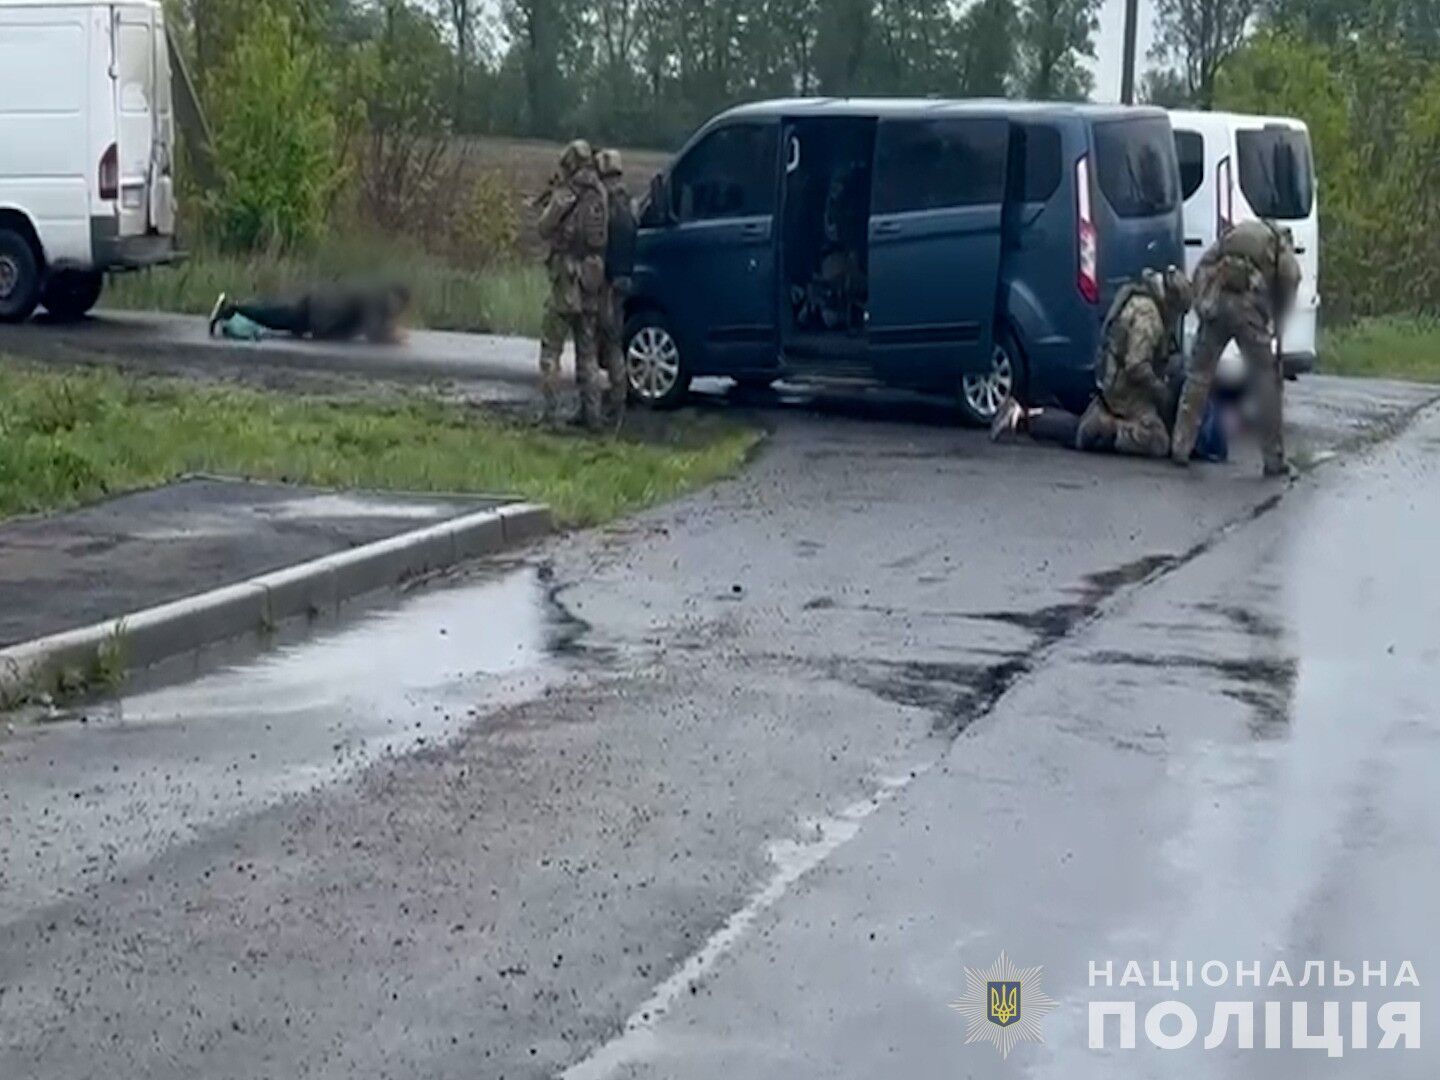 Затримано нападників, які вбили поліцейського на Вінниччині: їм загрожує довічне. Деталі та фото